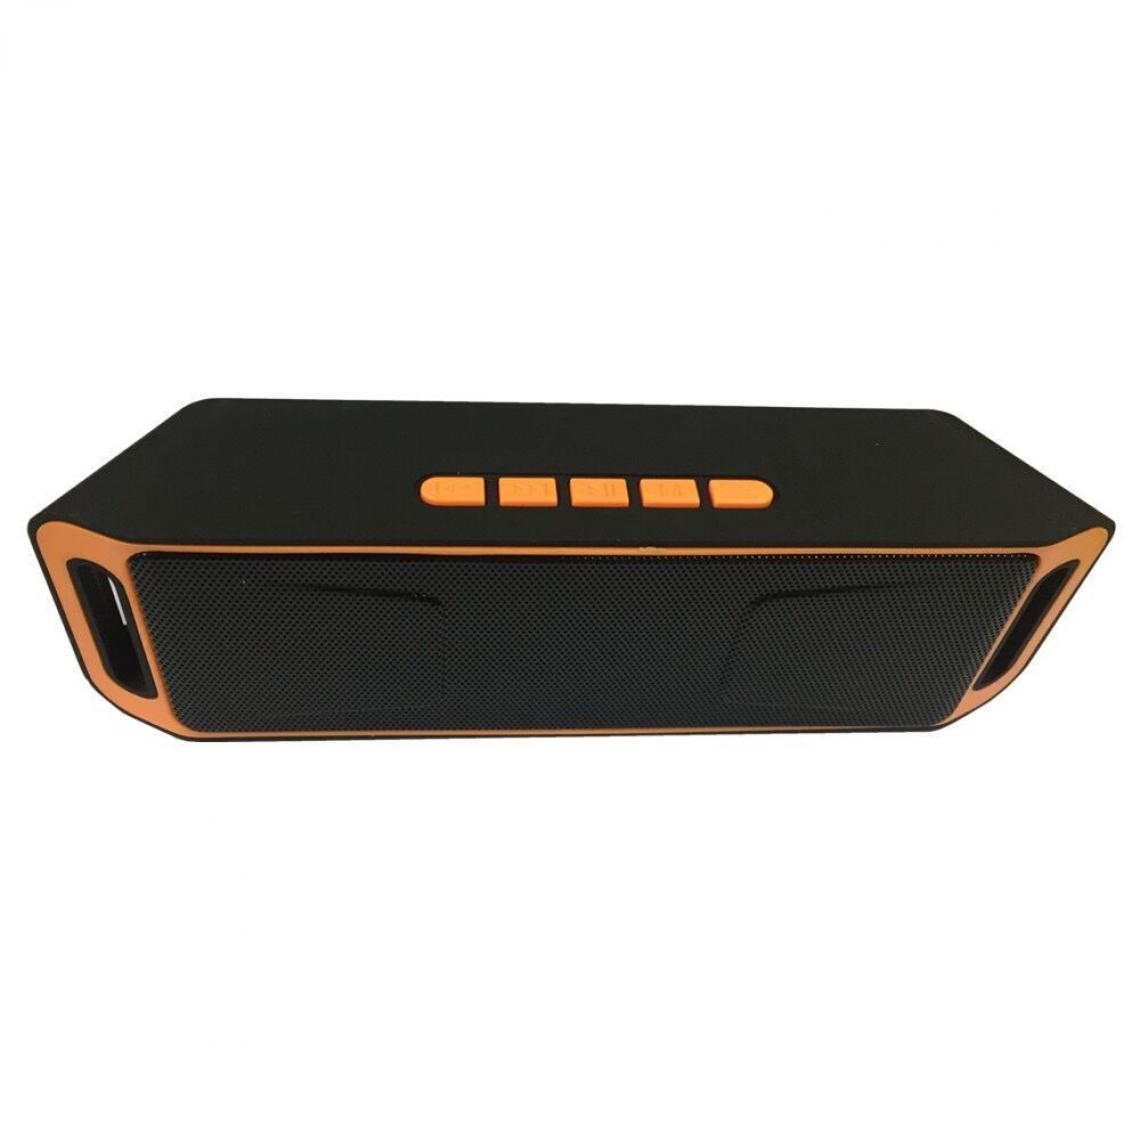 Universal - Haut-parleur Bluetooth portable sans fil extérieur Bass Stéréo Sound Subwoofer FM Radio MP3 Player USB TF Ordinateur Smartphone | Haut-parleur portable (orange) - Enceinte PC